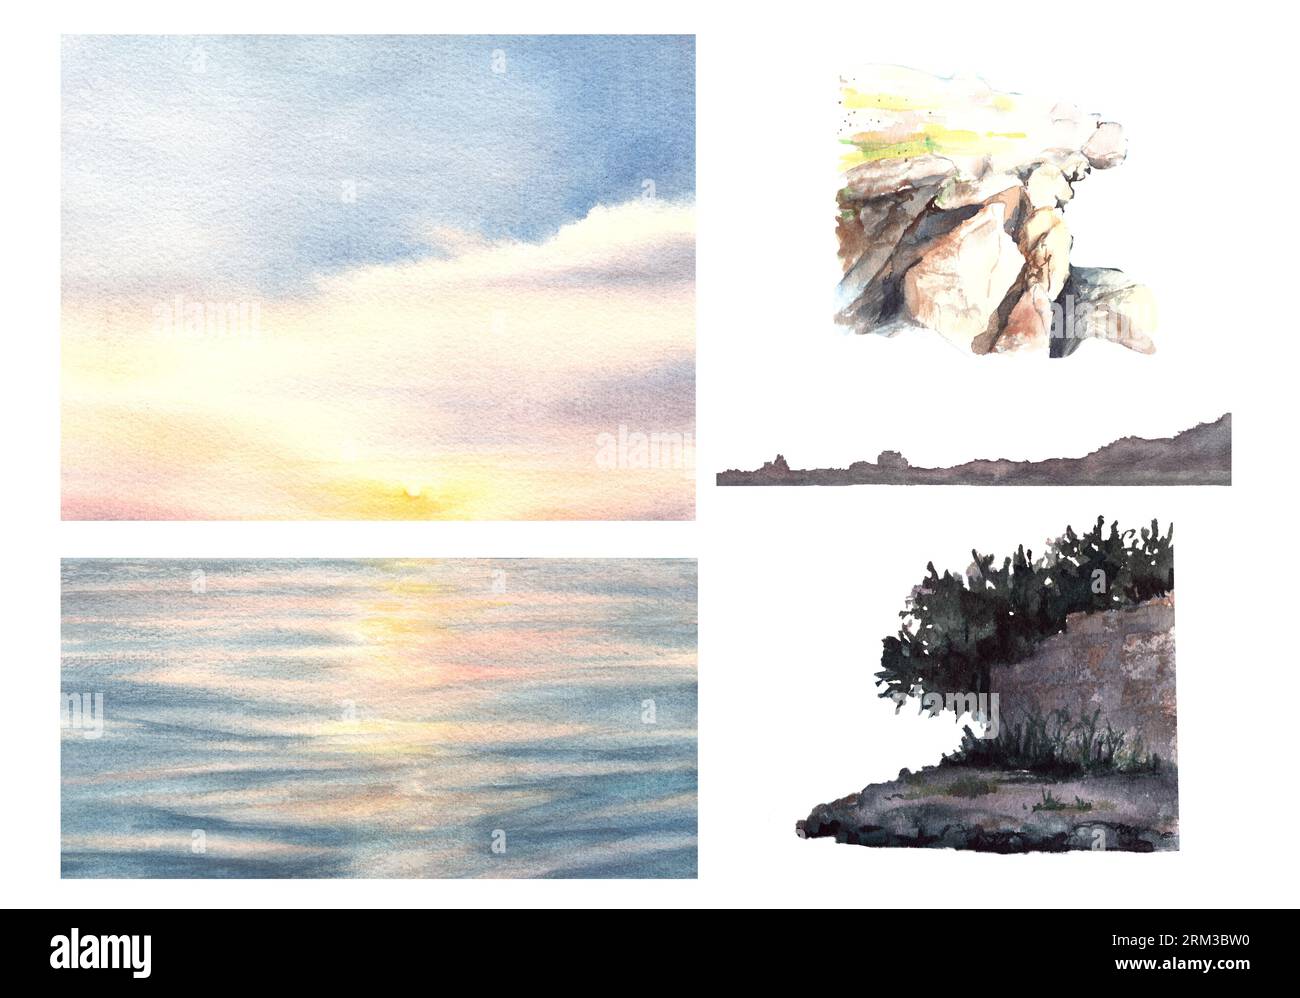 Aquarellbild im Querformat. Farbenfroher Sonnenuntergang auf dem Meer mit der Wolke und Reflexion auf dem Wasser. Steinpfeilermauer und Baum. Maritim Stockfoto